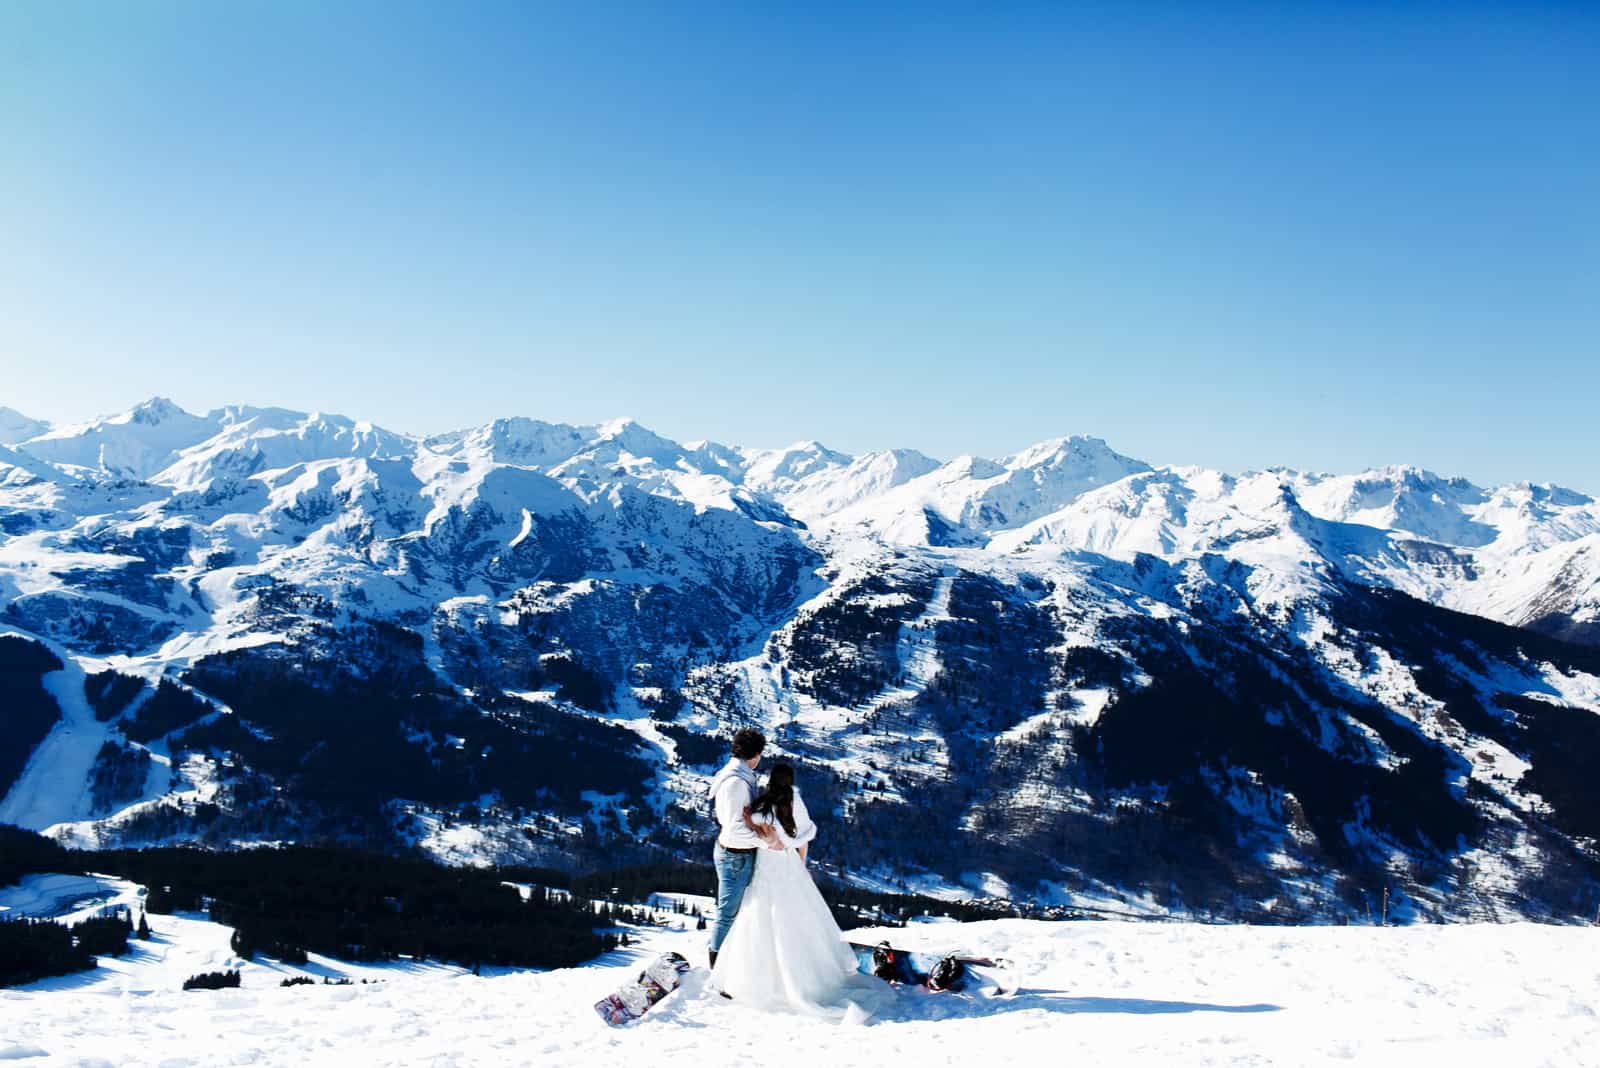 Braut und Bräutigam in Liebe küssen auf dem Hintergrund der Alpen Courchevel